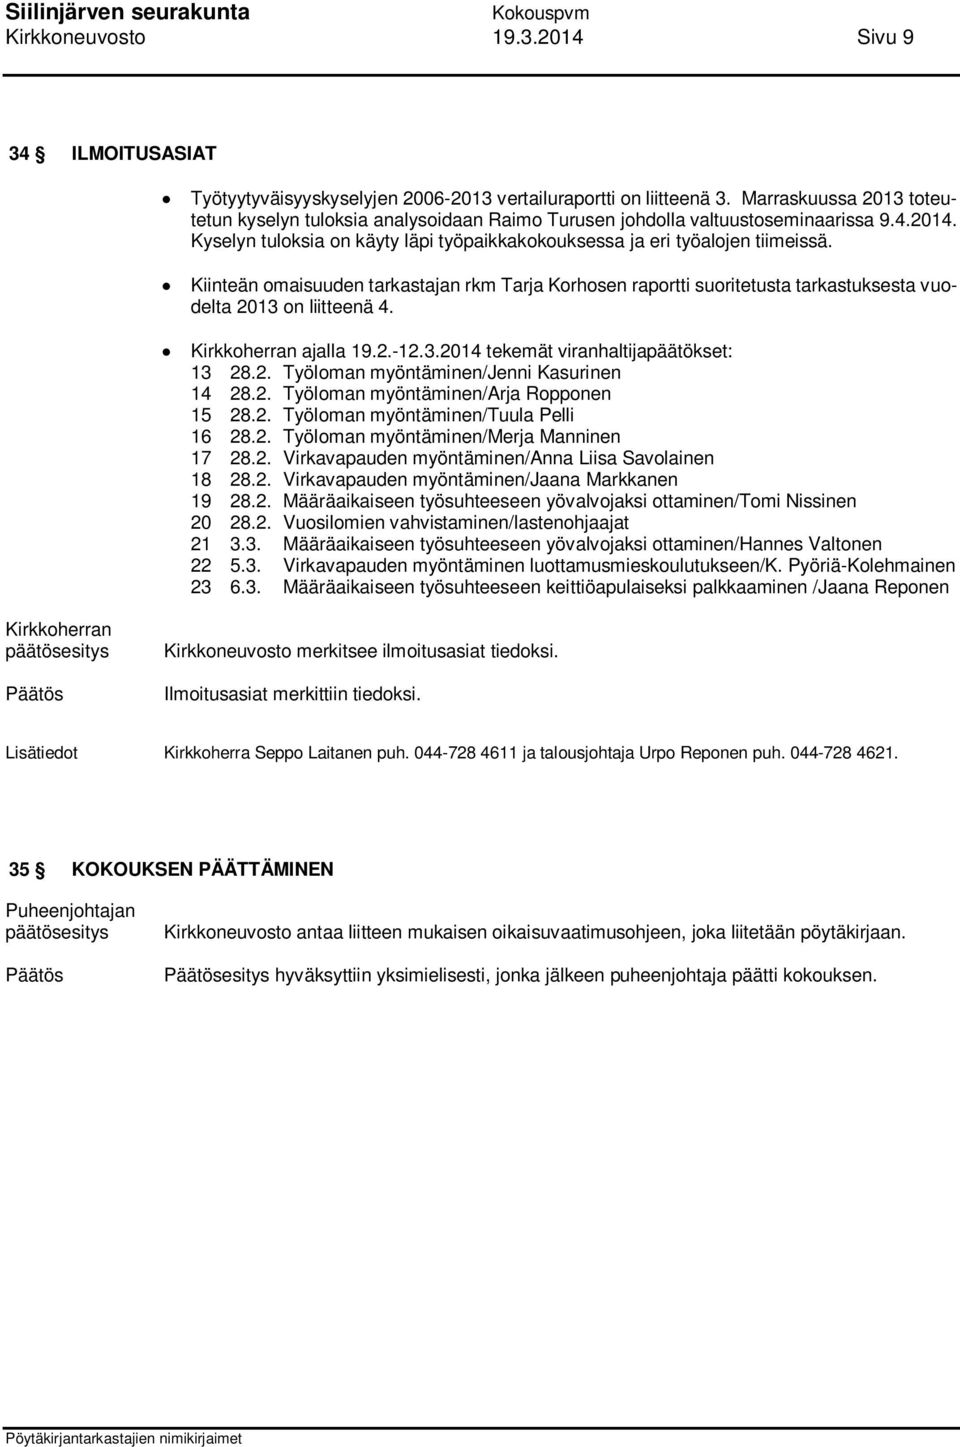 Kiinteän omaisuuden tarkastajan rkm Tarja Korhosen raportti suoritetusta tarkastuksesta vuodelta 2013 on liitteenä 4. Kirkkoherran ajalla 19.2.-12.3.2014 tekemät viranhaltijapäätökset: 13 28.2. Työloman myöntäminen/jenni Kasurinen 14 28.